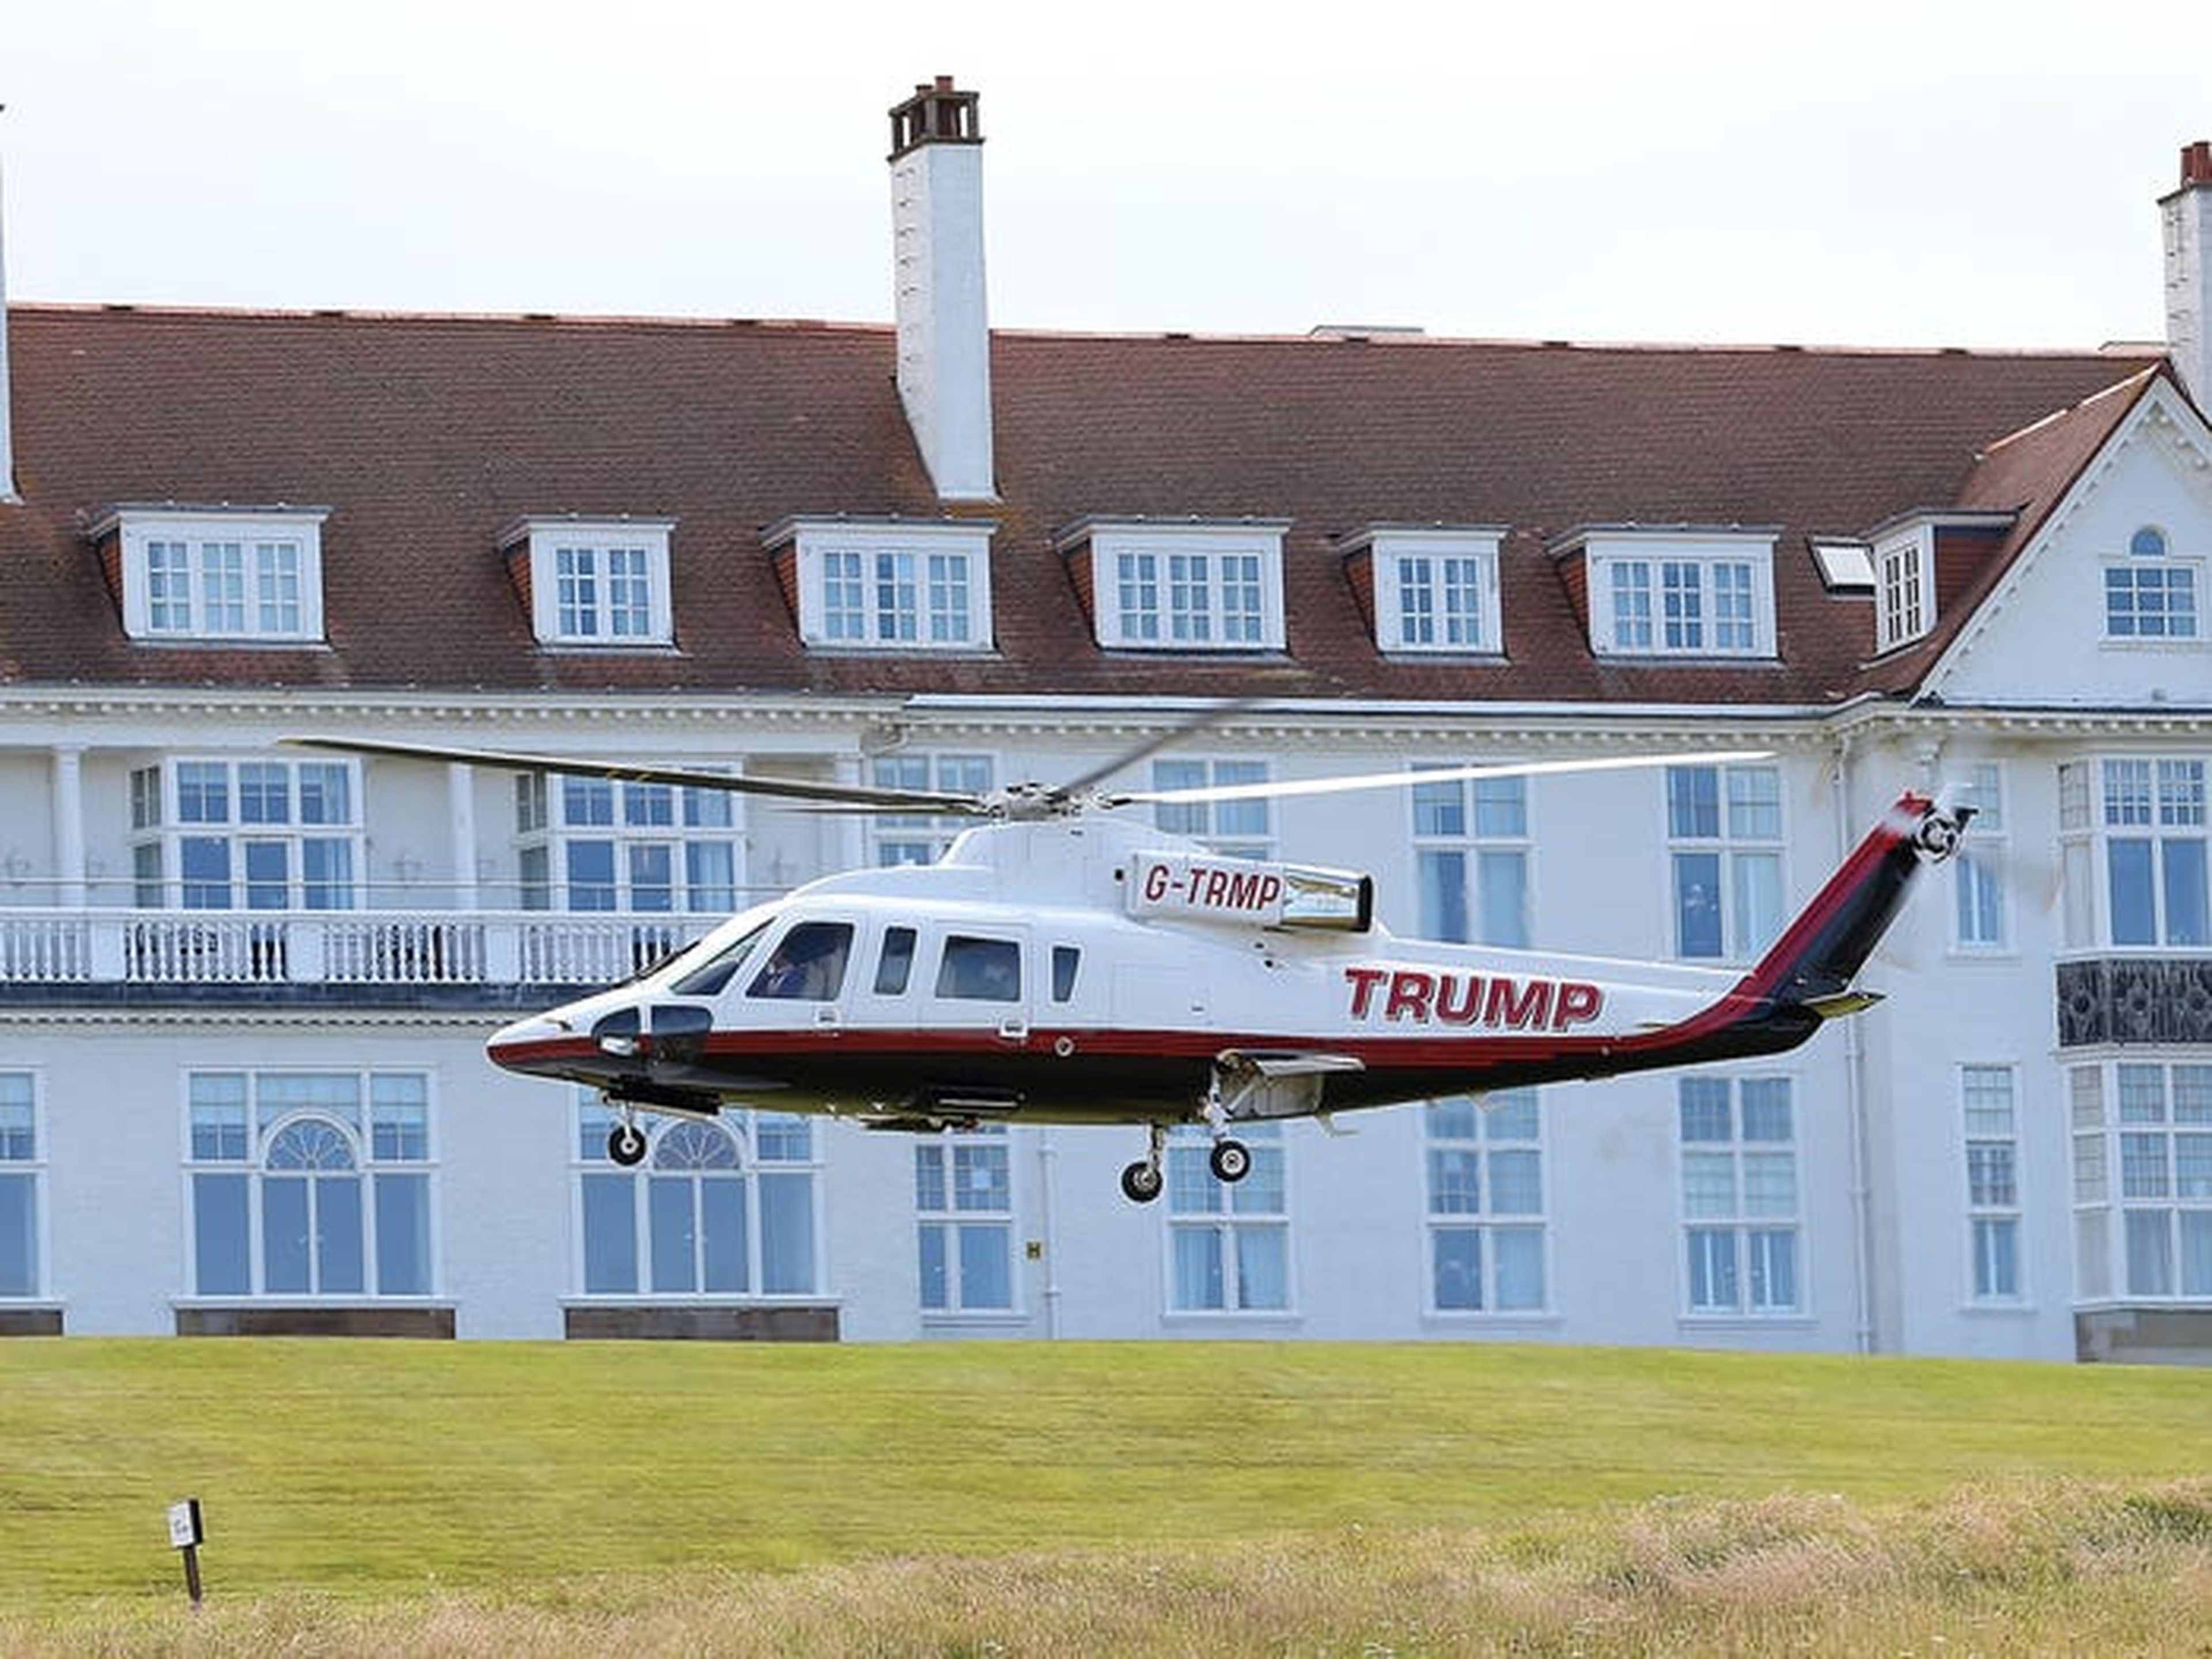 Los otros aviones de la flota de Trump incluyen 3 Sikorsky S-76, helicópteros conocidos por su facilidad de uso